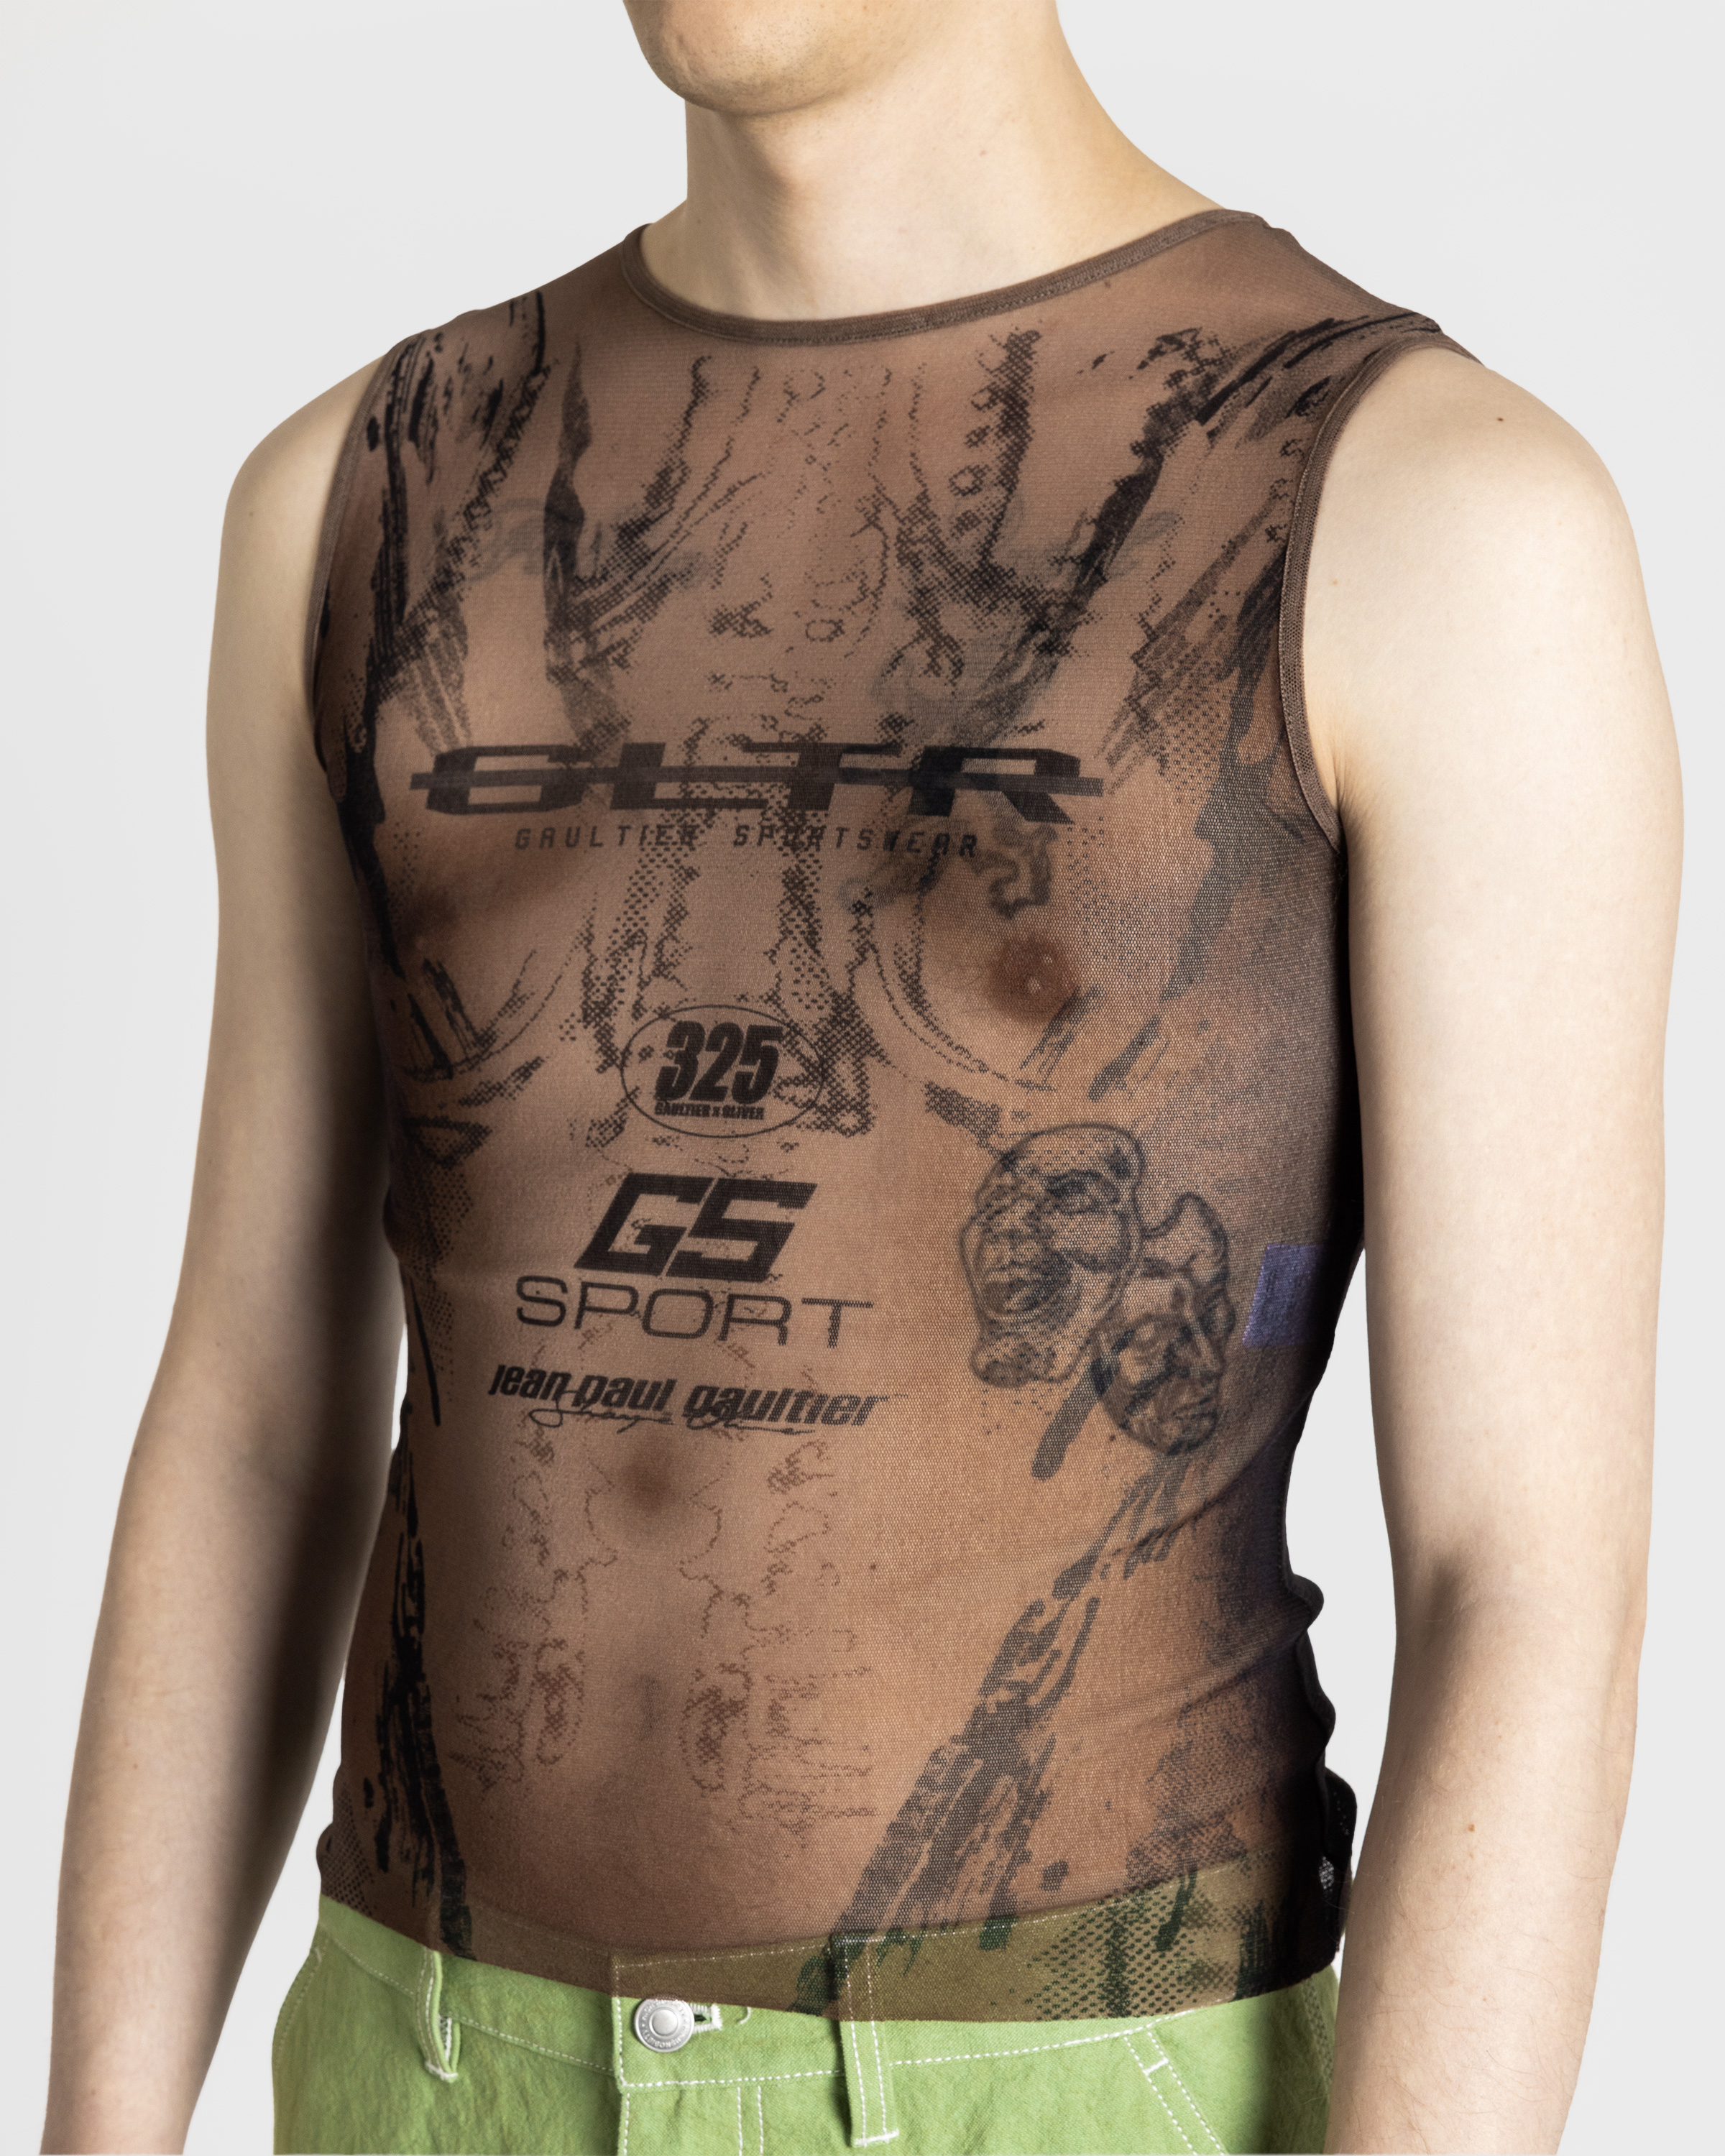 Jean Paul Gaultier x Shayne Oliver – Mesh Tank Top Printed "Body" Dark Nude/Black - Tank Tops - Beige - Image 5